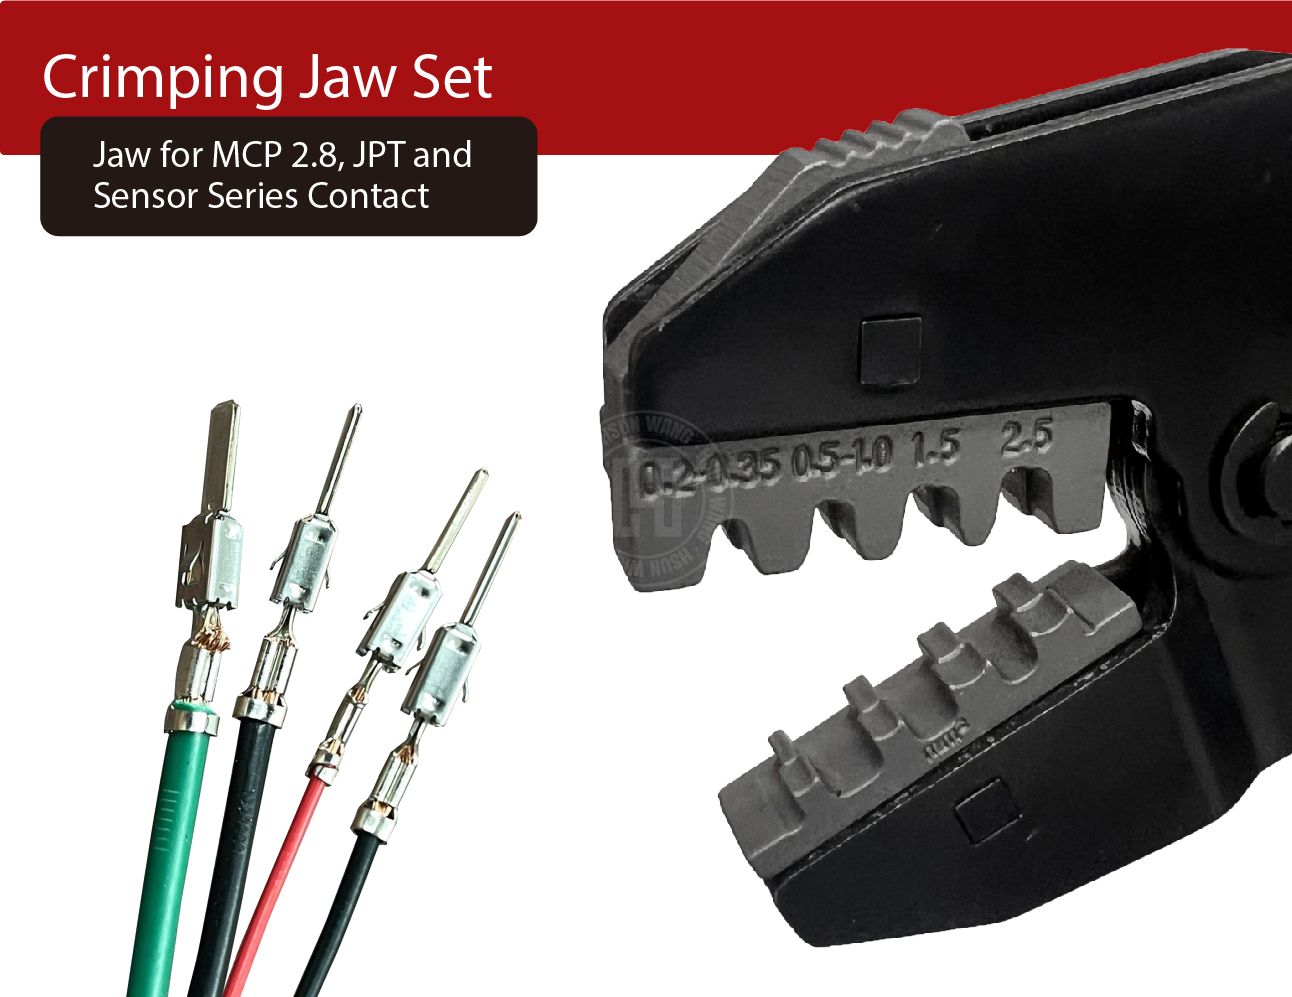 J12JL5-Jaw-crimp-crimping-crimp tool-crimping tool-crimp wire-ferrule crimp-ratchet crimp-Taiwan Manufacturer-hsunwang-licrim-hsunwang.com